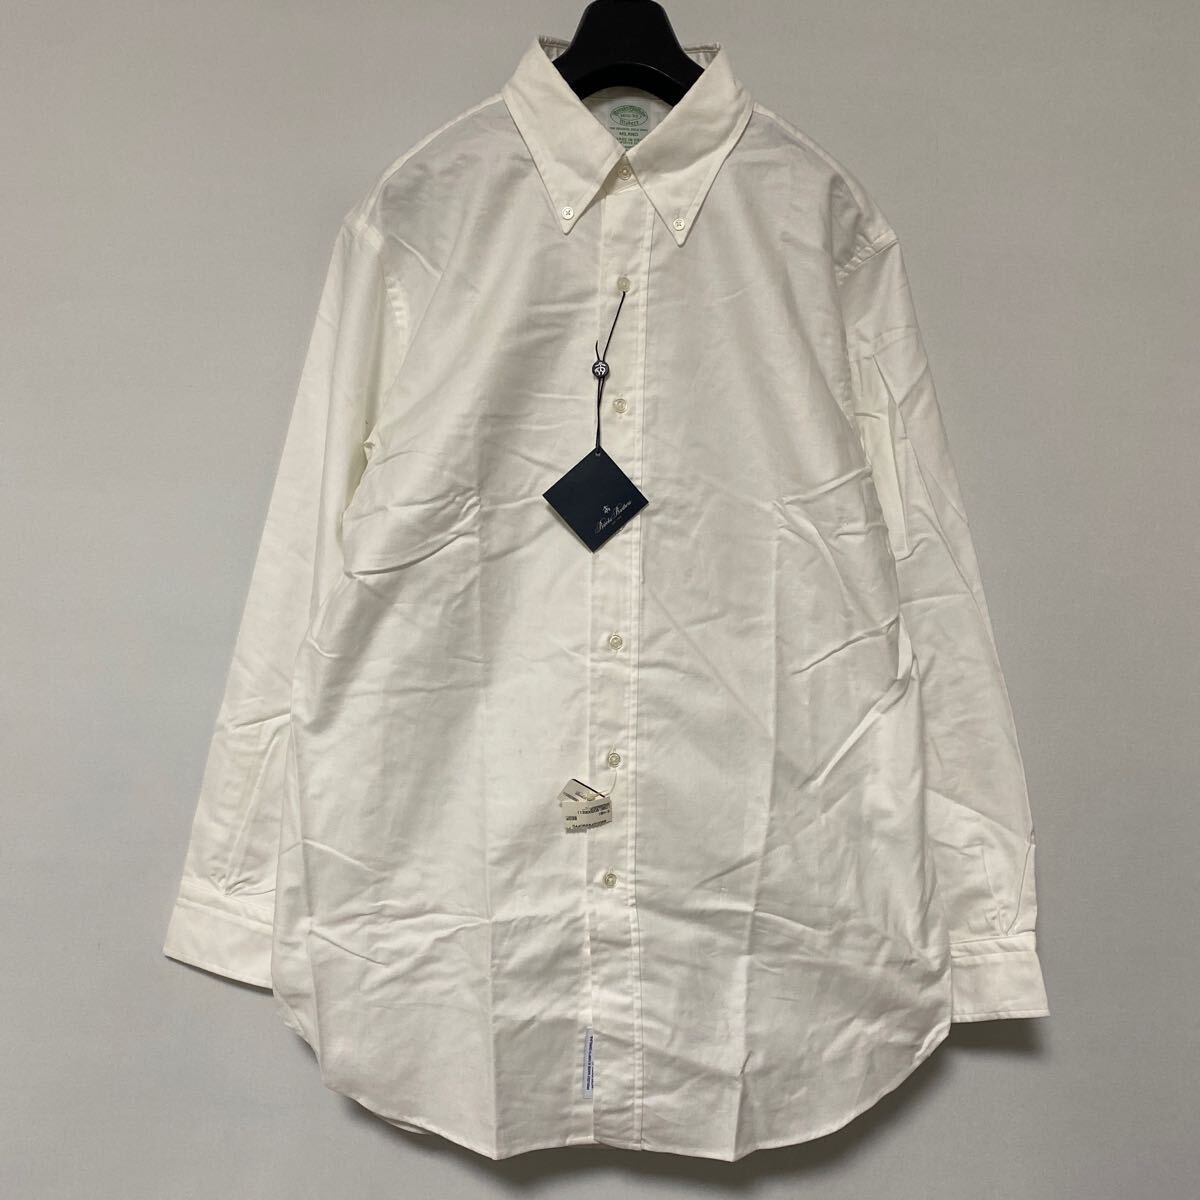 新品未使用品 アメリカ製 ブルックスブラザーズ オックスフォード ボタンダウン シャツ 16 1/2 L USA brooks brothers OXford BD shirt